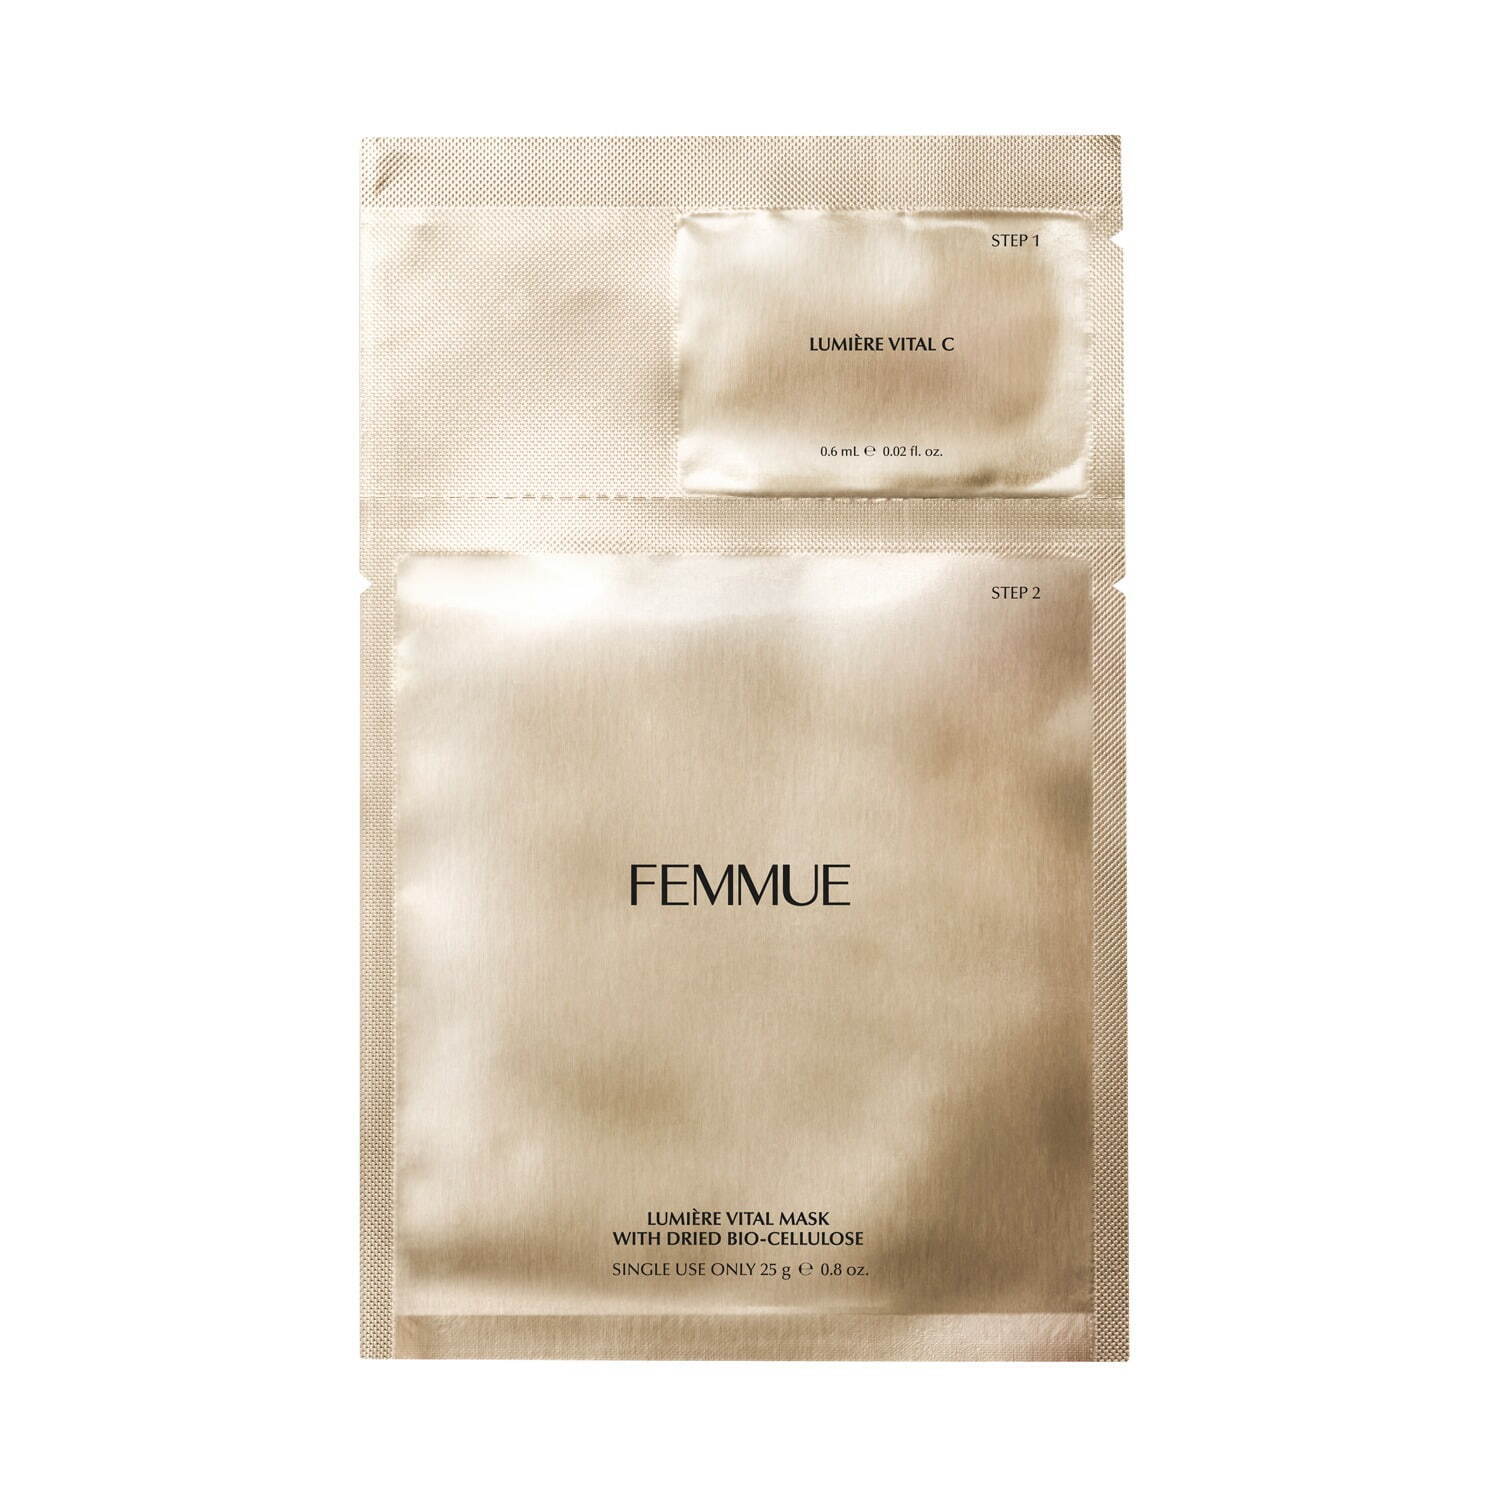 「ルミエール ヴァイタルマスク」ルミエールヴァイタルC [クリア肌&導入美容液] 0.6mLとのセット)×5袋入 4,840円